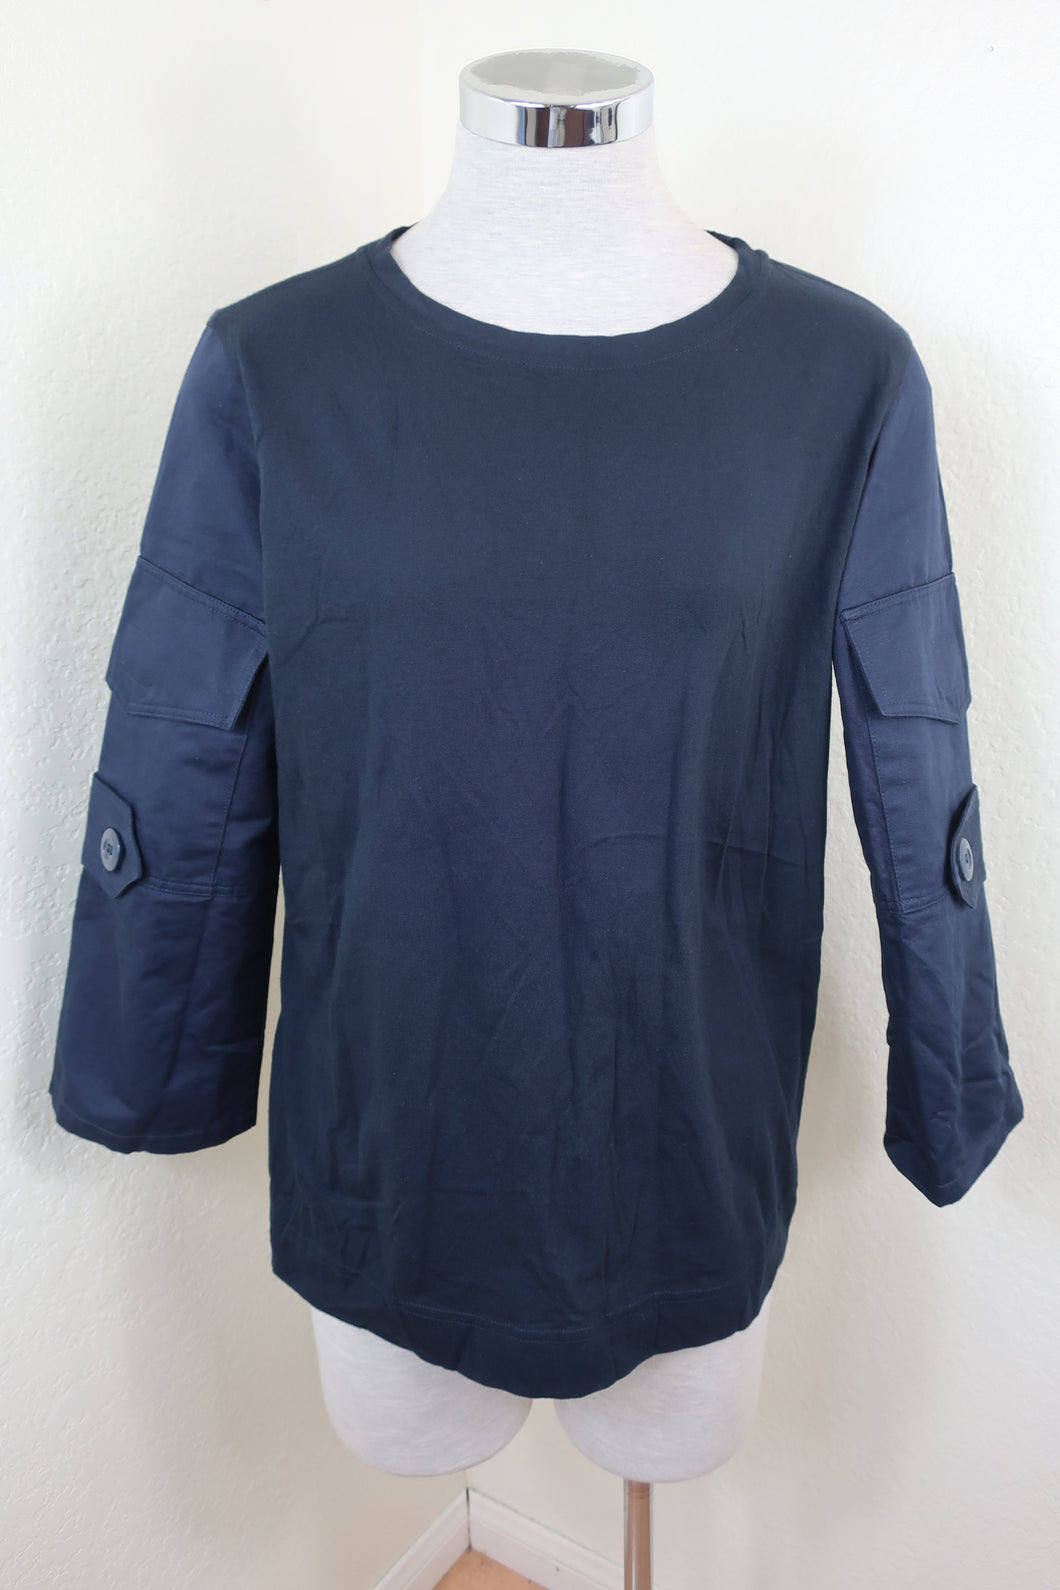 MARNI Black Cotton Long Sleeves Pocket Top Blouse Shirt S Small 38 4 5 6